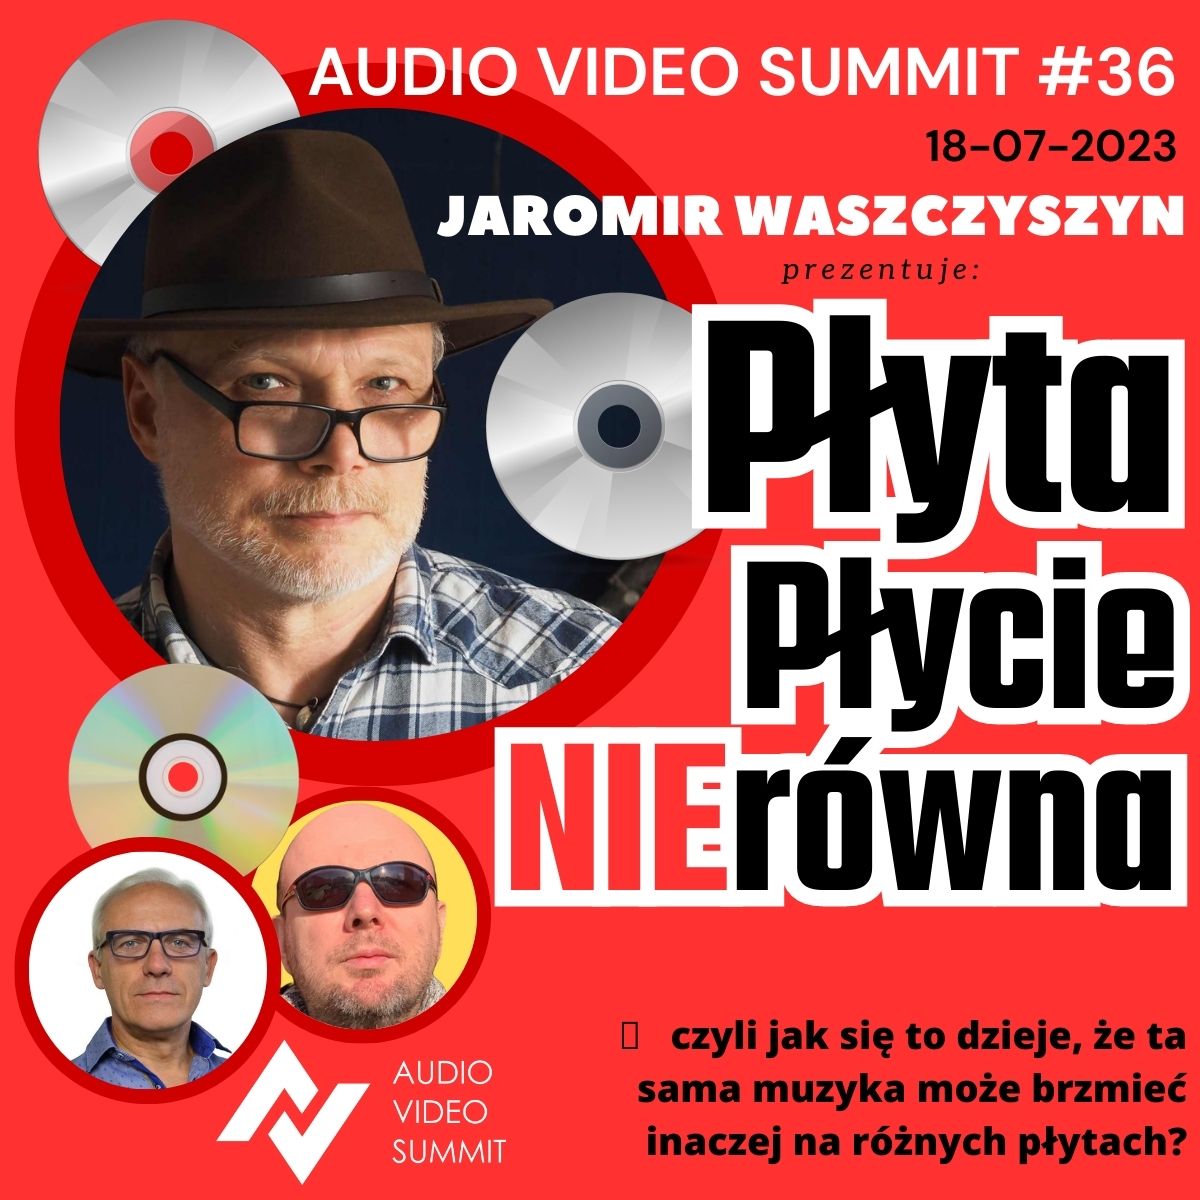 Audio Video Summit #36: Płyta płycie NIErówna